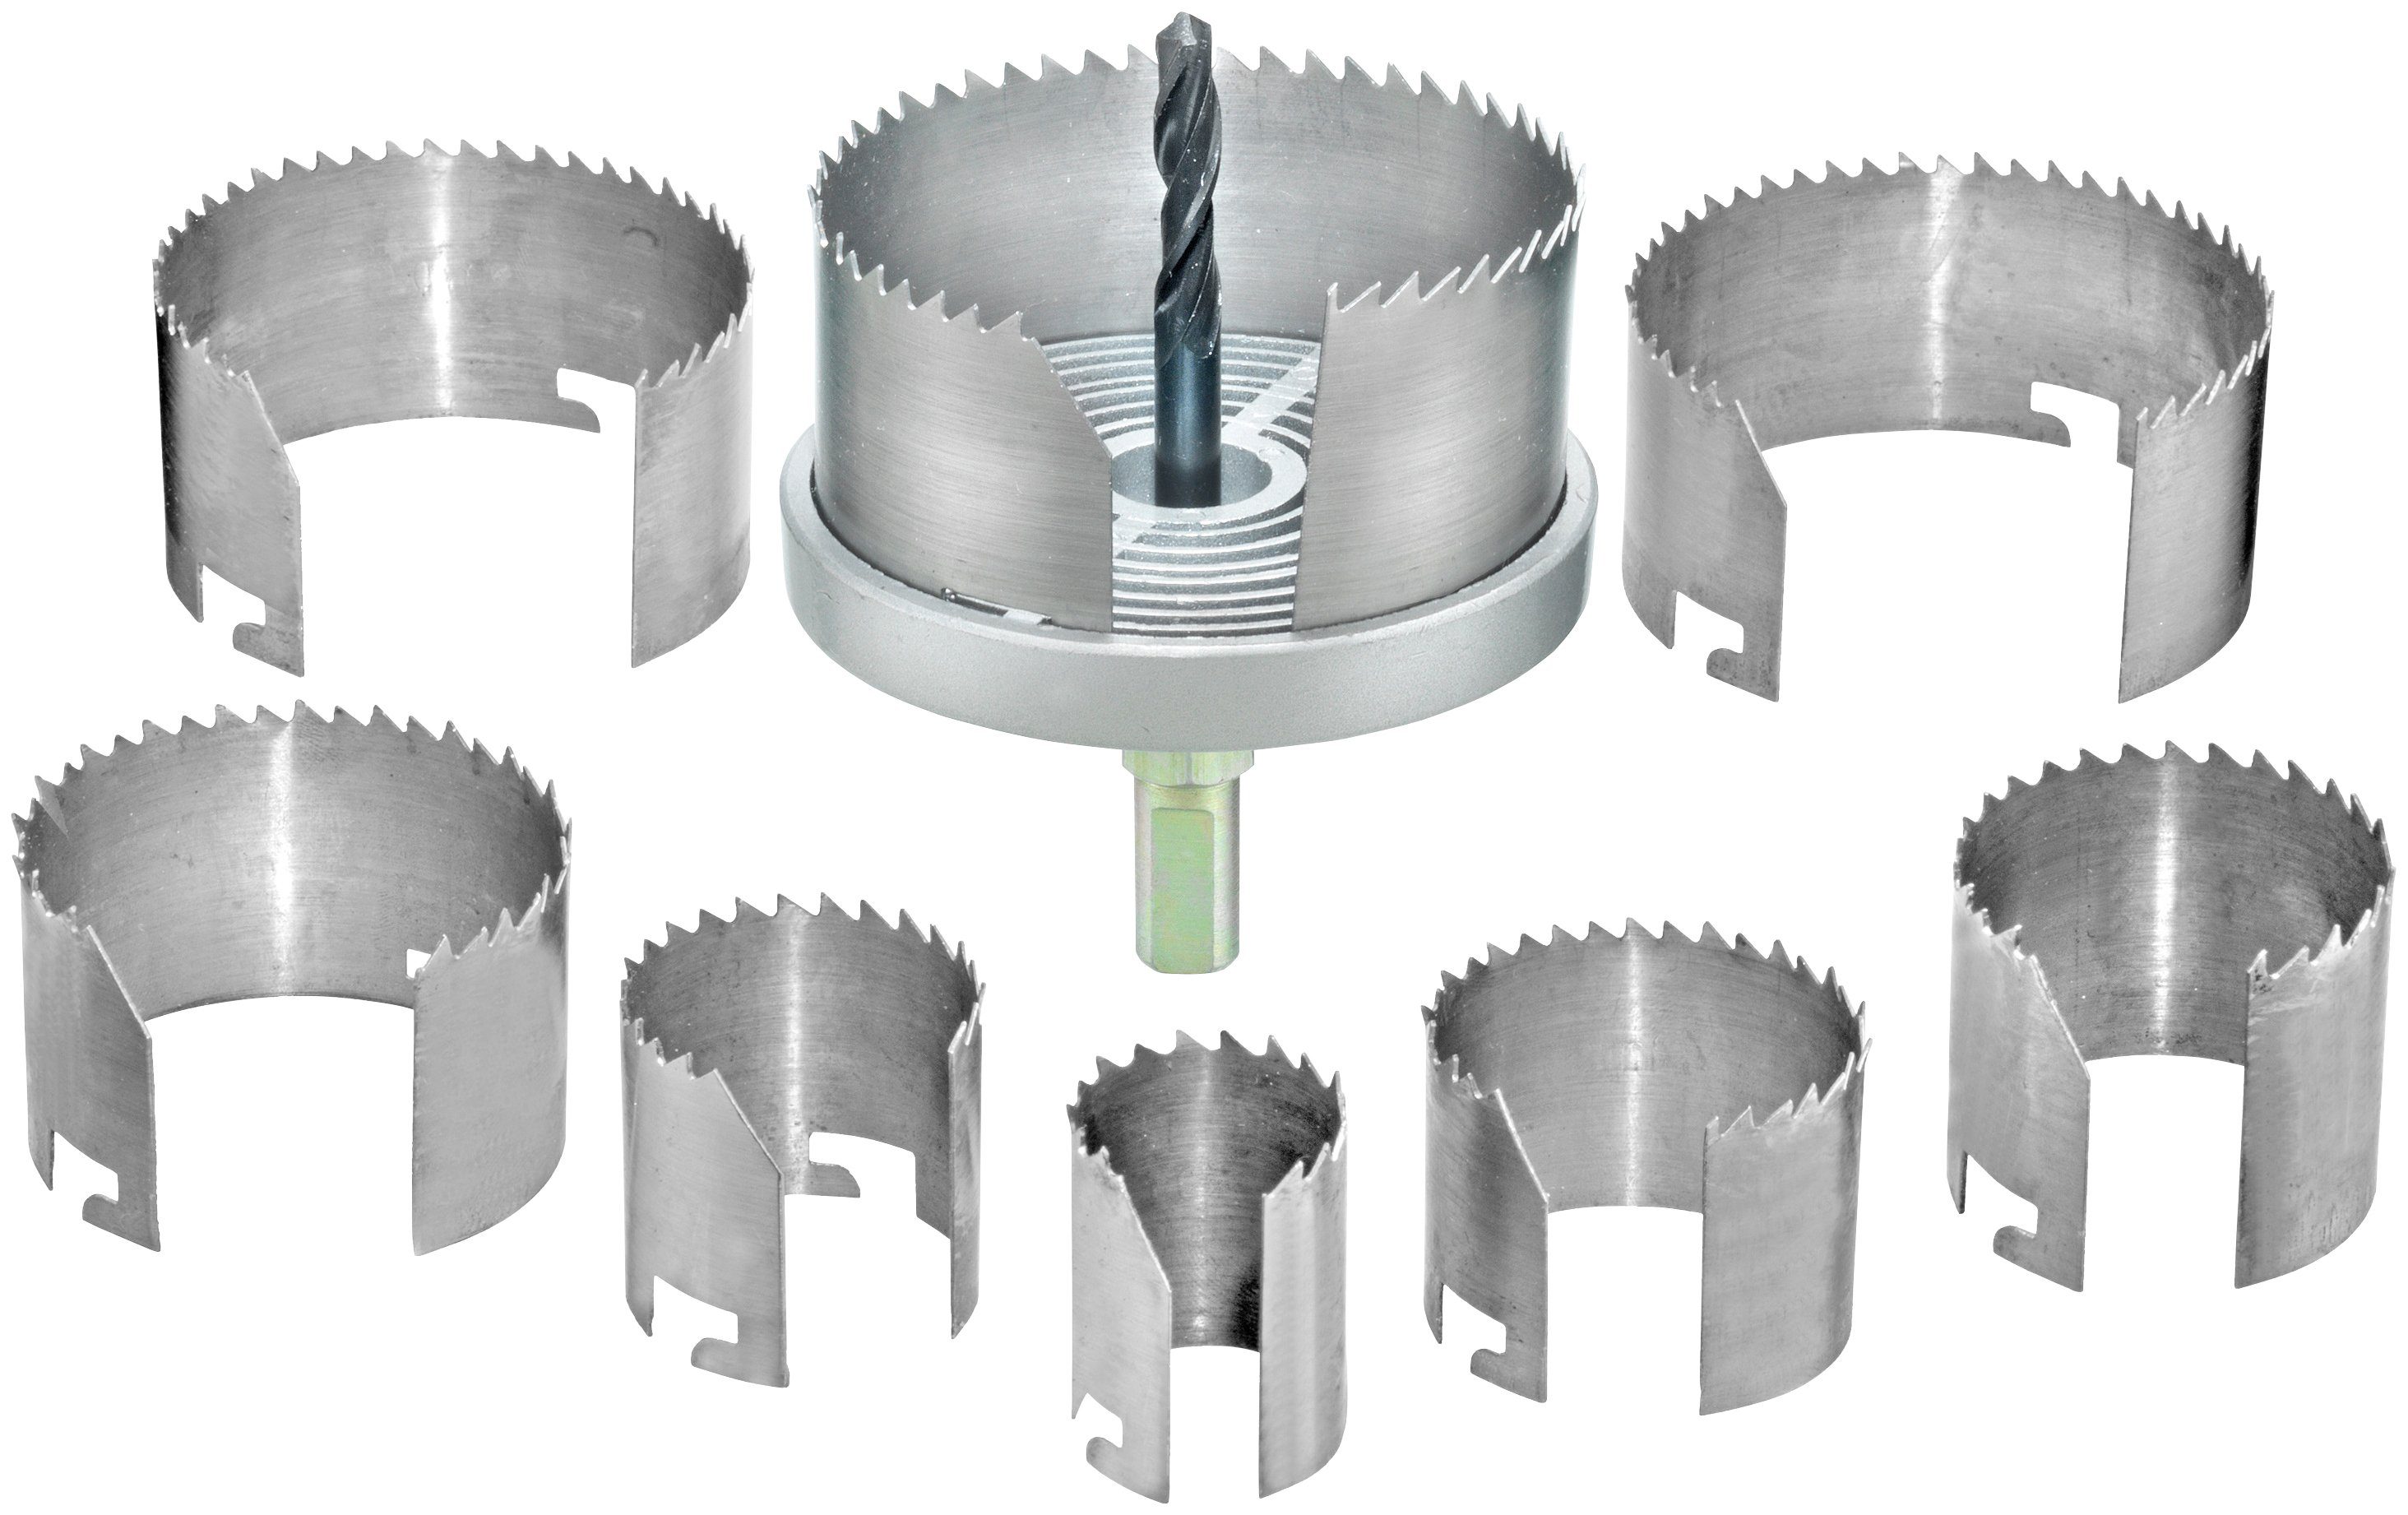 Connex Lochsäge 25-68 mm, Set, Hohllochbohrungen + Rohrdurchführungen, für Ventilationsinstallationen